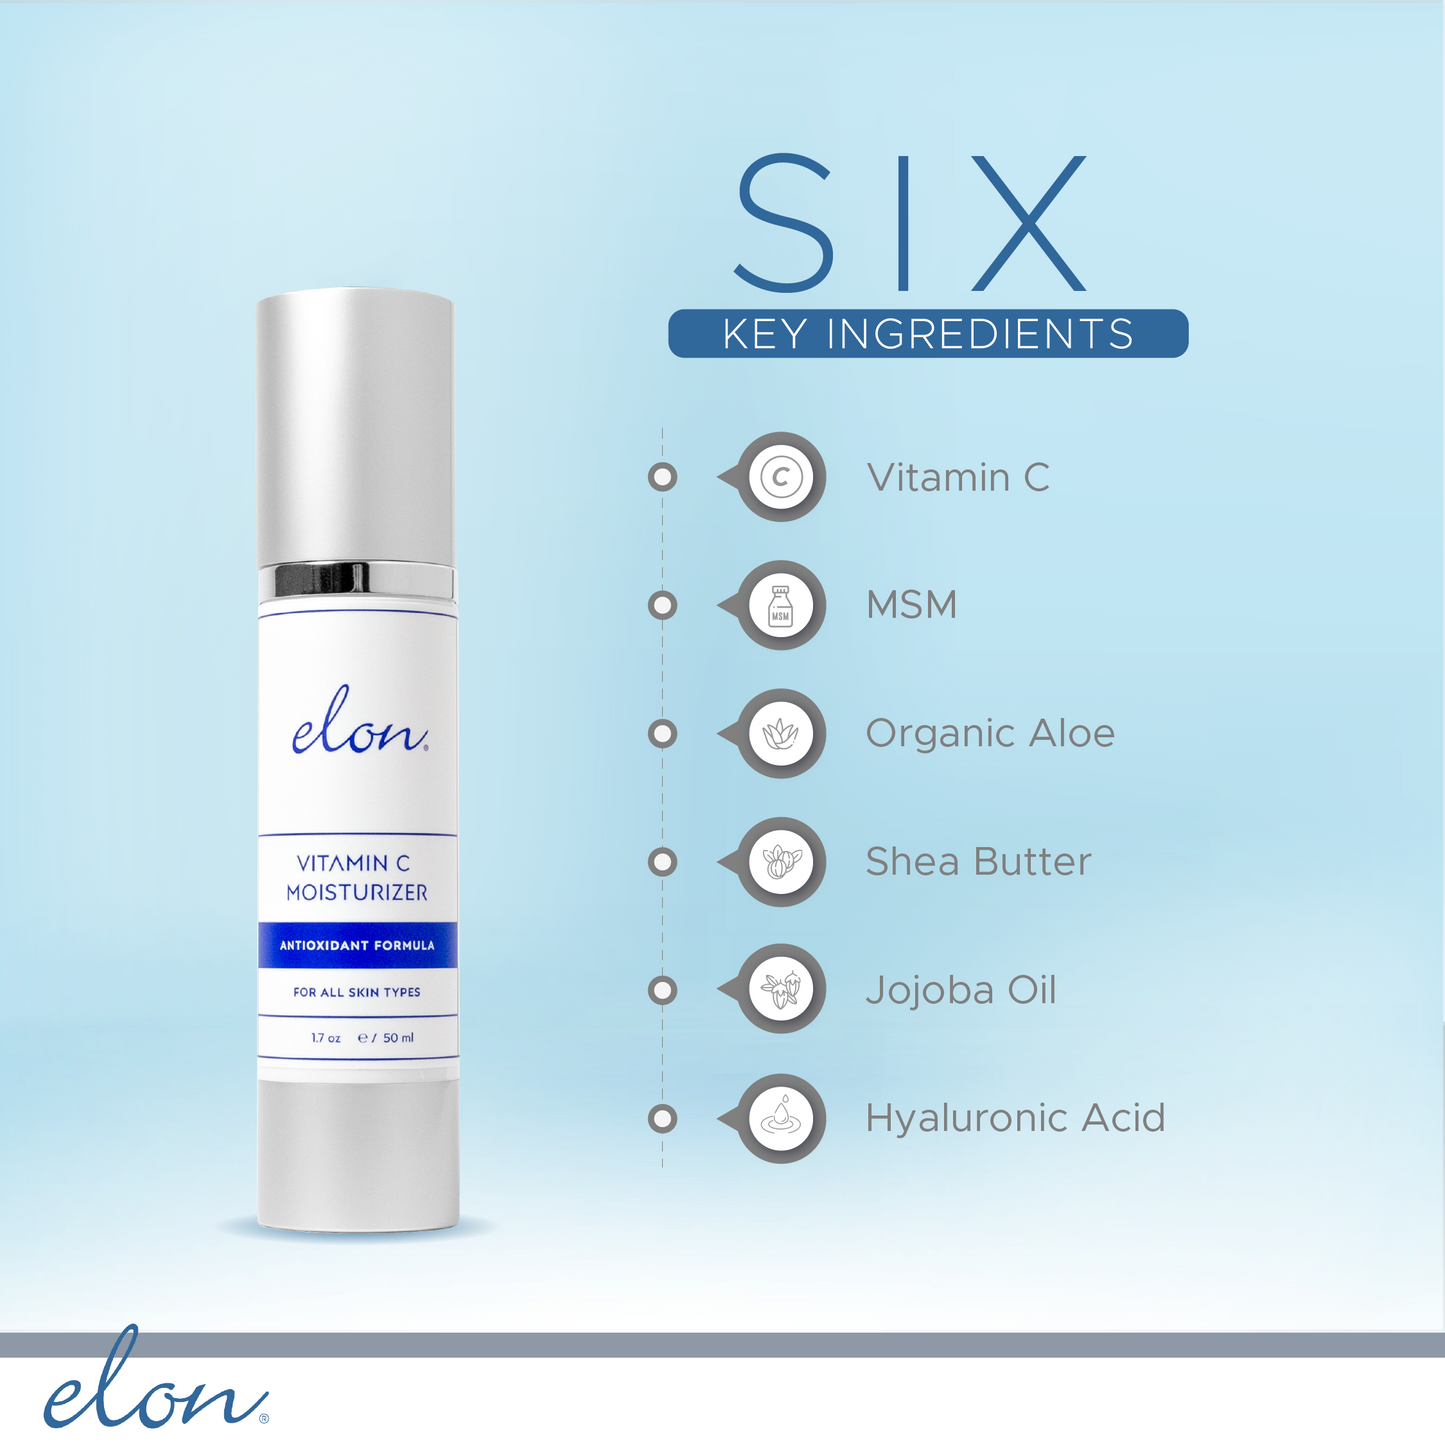 Elon Vitamin C Moisturizer: Fragrance-Free & For All Skin Types